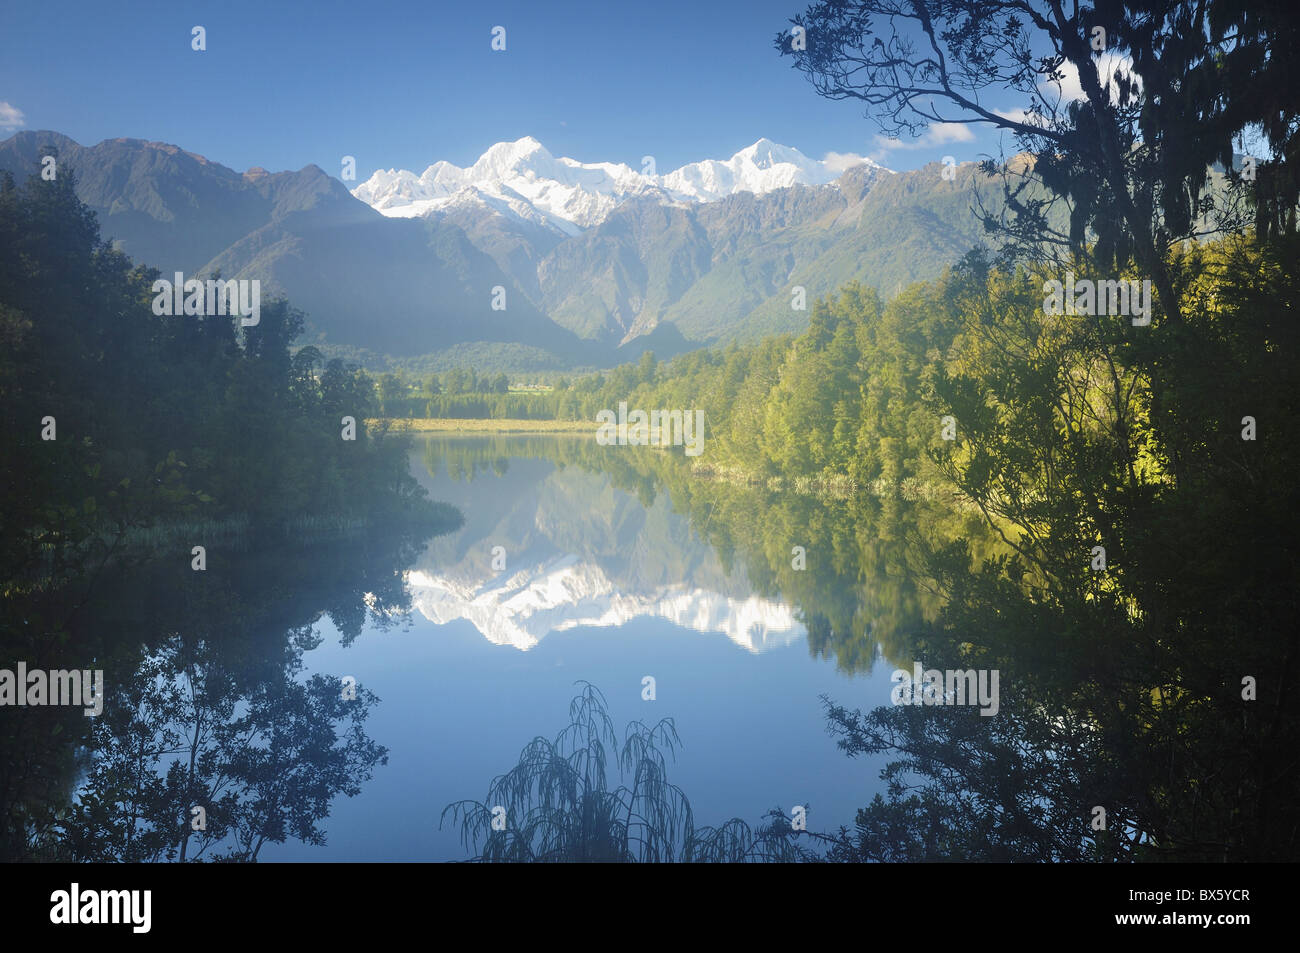 Il lago Matheson, Mount Tasman e Mount Cook, Westland Tai Poutini National Park, sito Patrimonio Mondiale dell'UNESCO, Nuova Zelanda Foto Stock